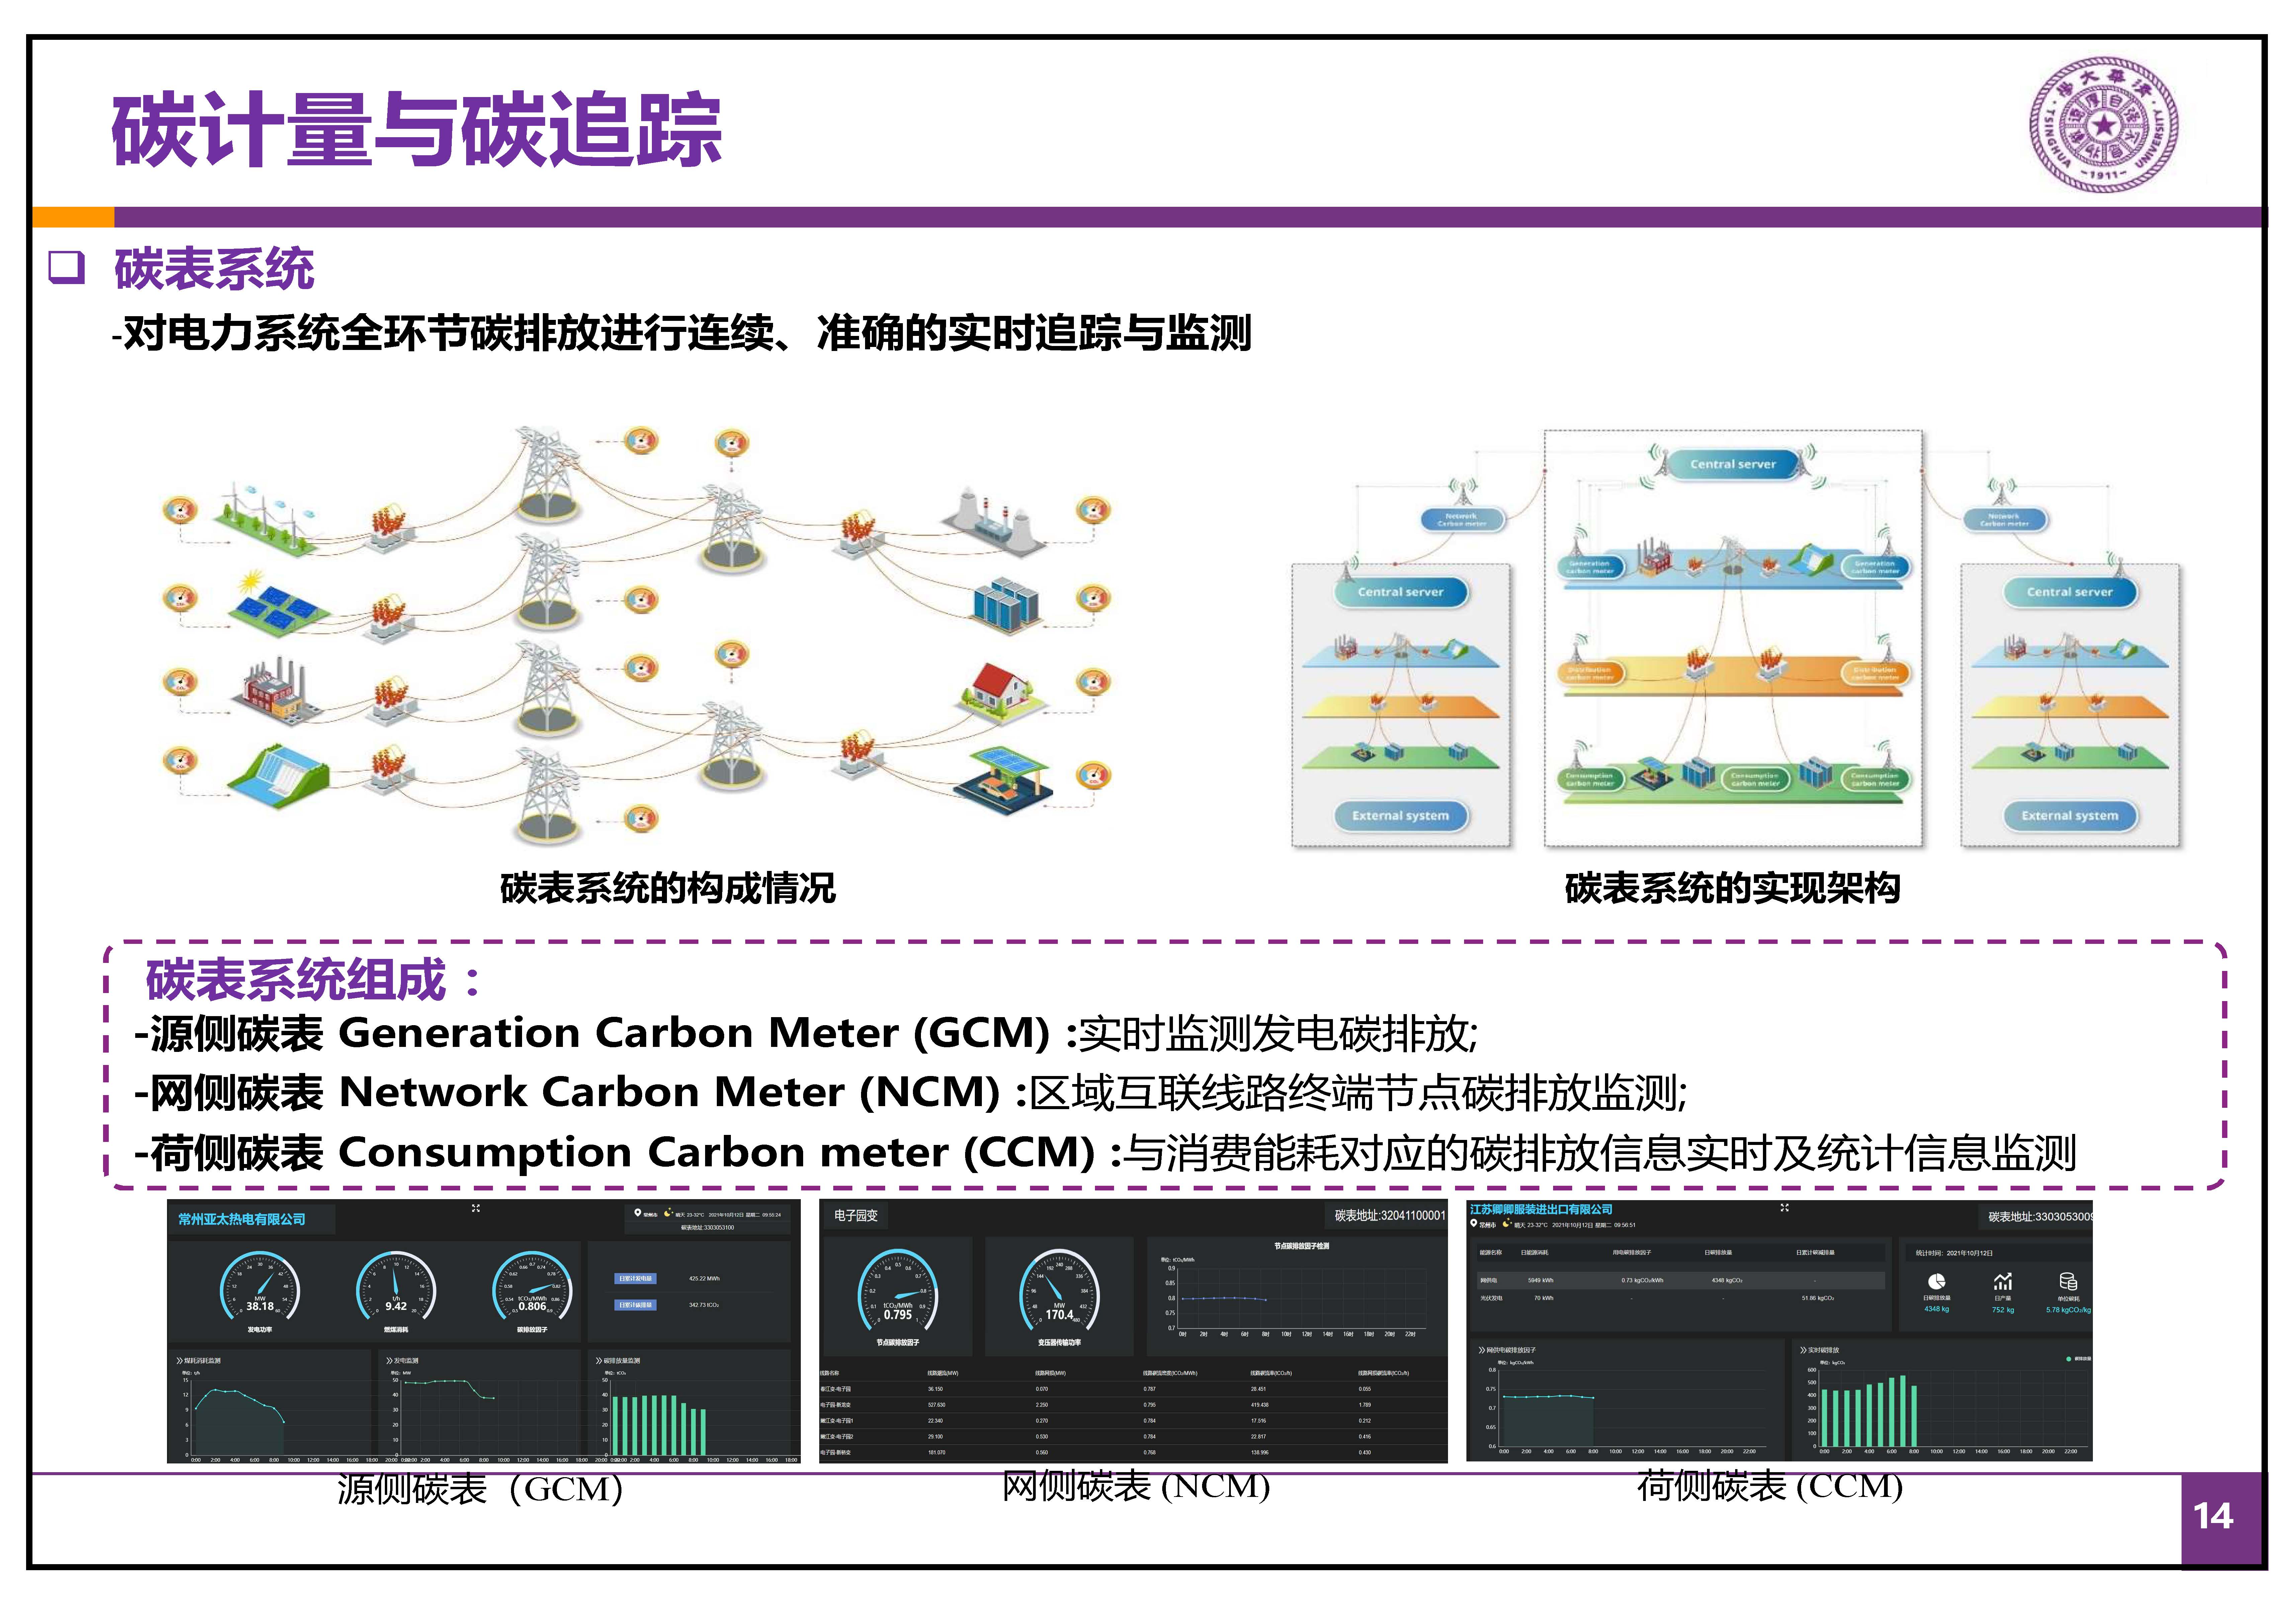 新型电力系统之“碳路”-中国能源研究会-康重庆(拆页2)_页面_14.jpg